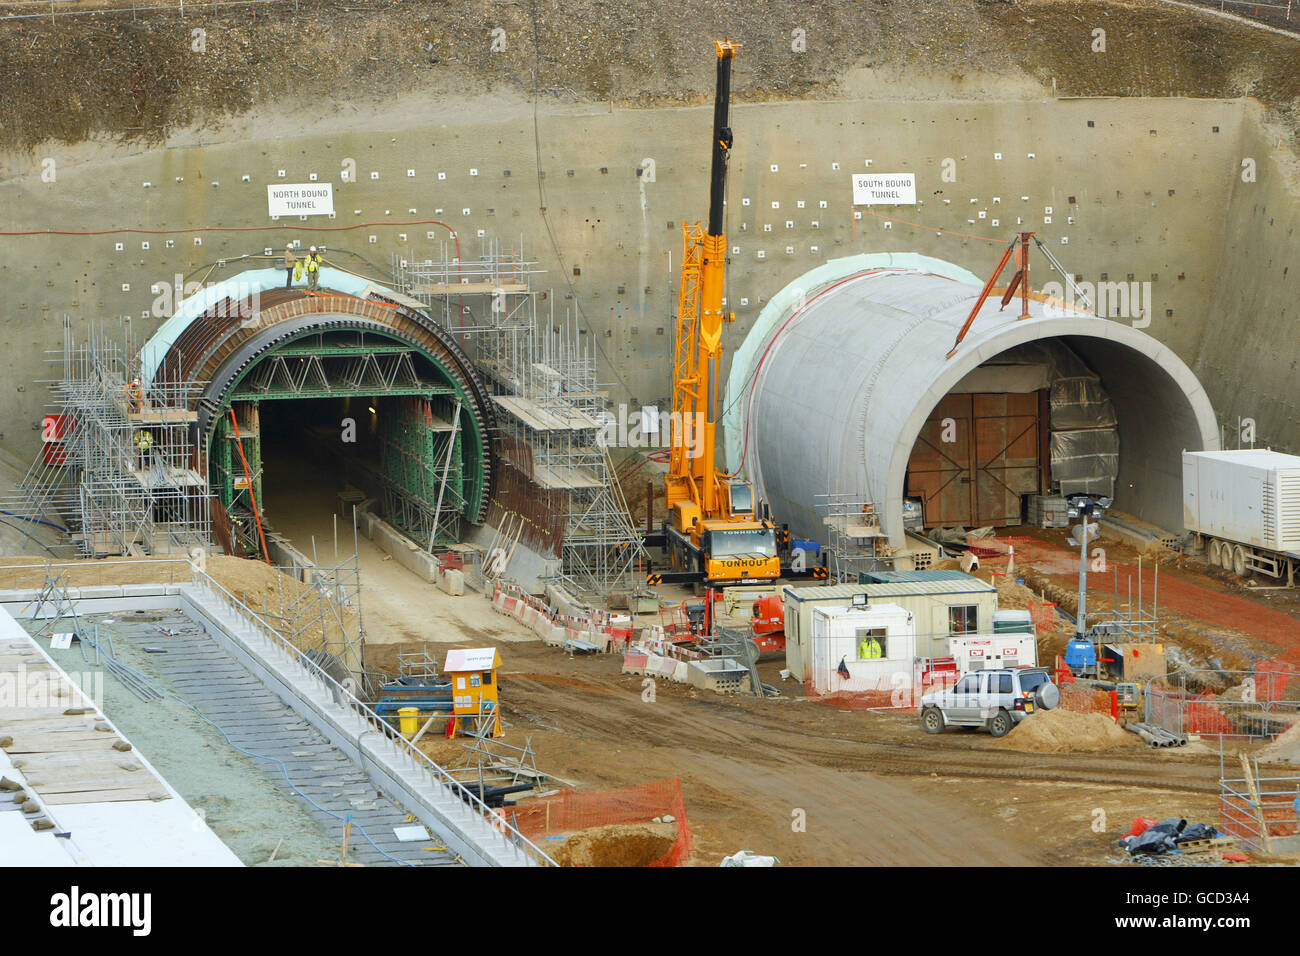 Eine allgemeine Ansicht des südlichen Endes der Straßentunnel, die in Hindhead in Surrey im Bau sind. Das A3-Tunnelprojekt wird die zweispurige Verbindung zwischen London und Portsmouth vervollständigen und eine wichtige Stauquelle um die Kreuzung A3/A287 in Hindhead beseitigen. Die neue Straße wird 6 km lang sein und zwei gebohrte Tunnel unter dem Devil's Punch Bowl, einem Ort von besonderem wissenschaftlichem Interesse, umfassen. Stockfoto